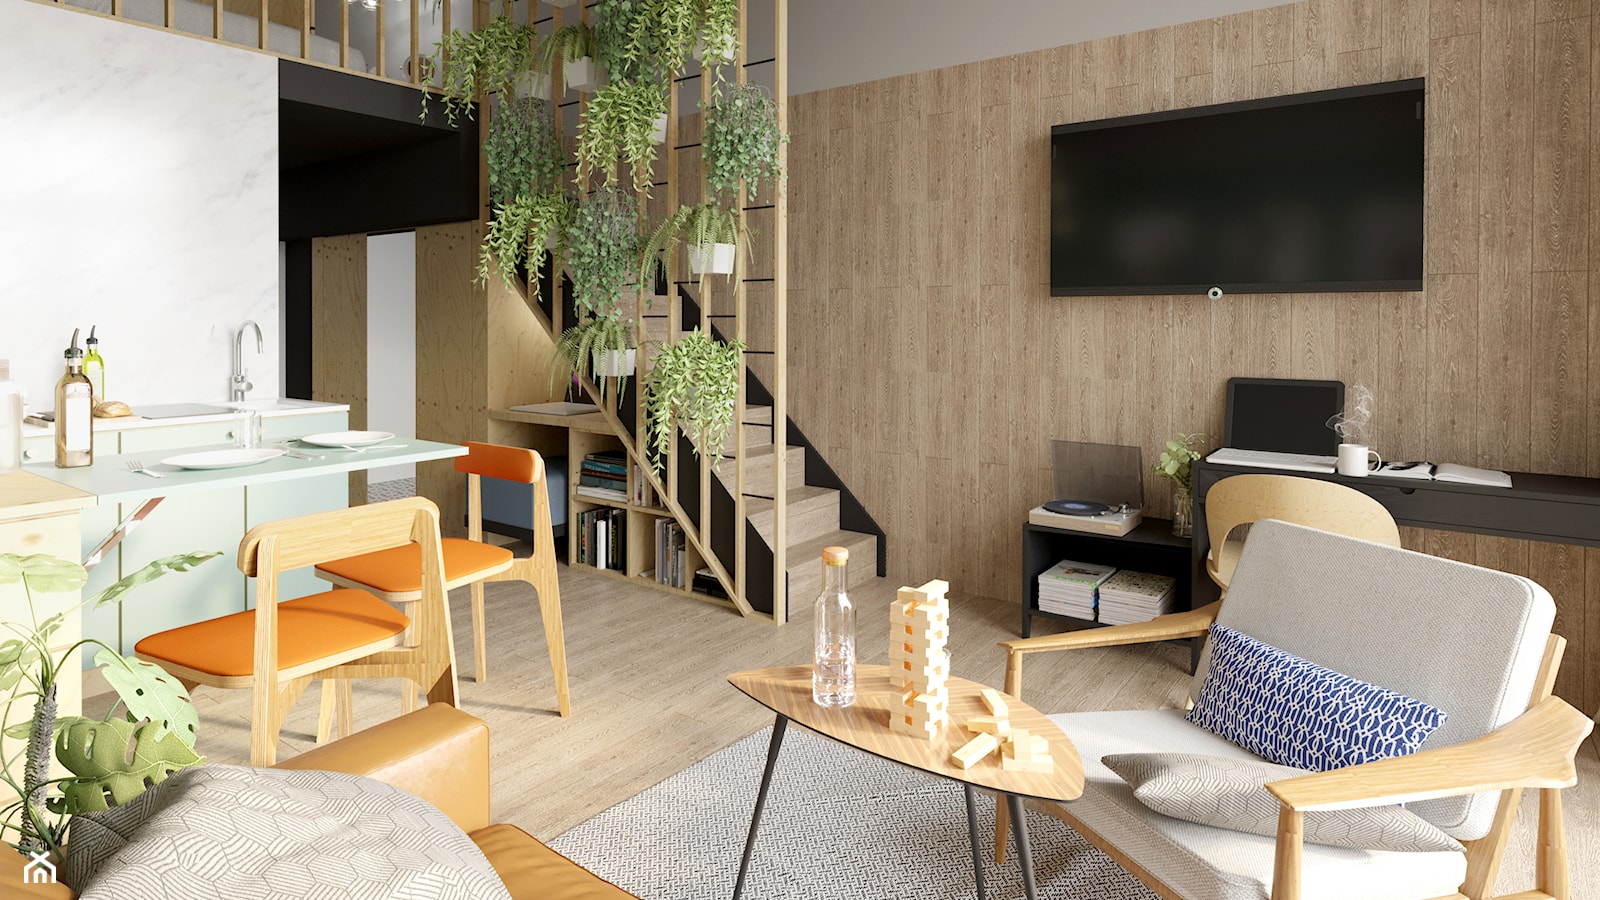 Apartament Praktyczny MINIMAXY - Salon, styl minimalistyczny - zdjęcie od Monika Bucholc - Homebook